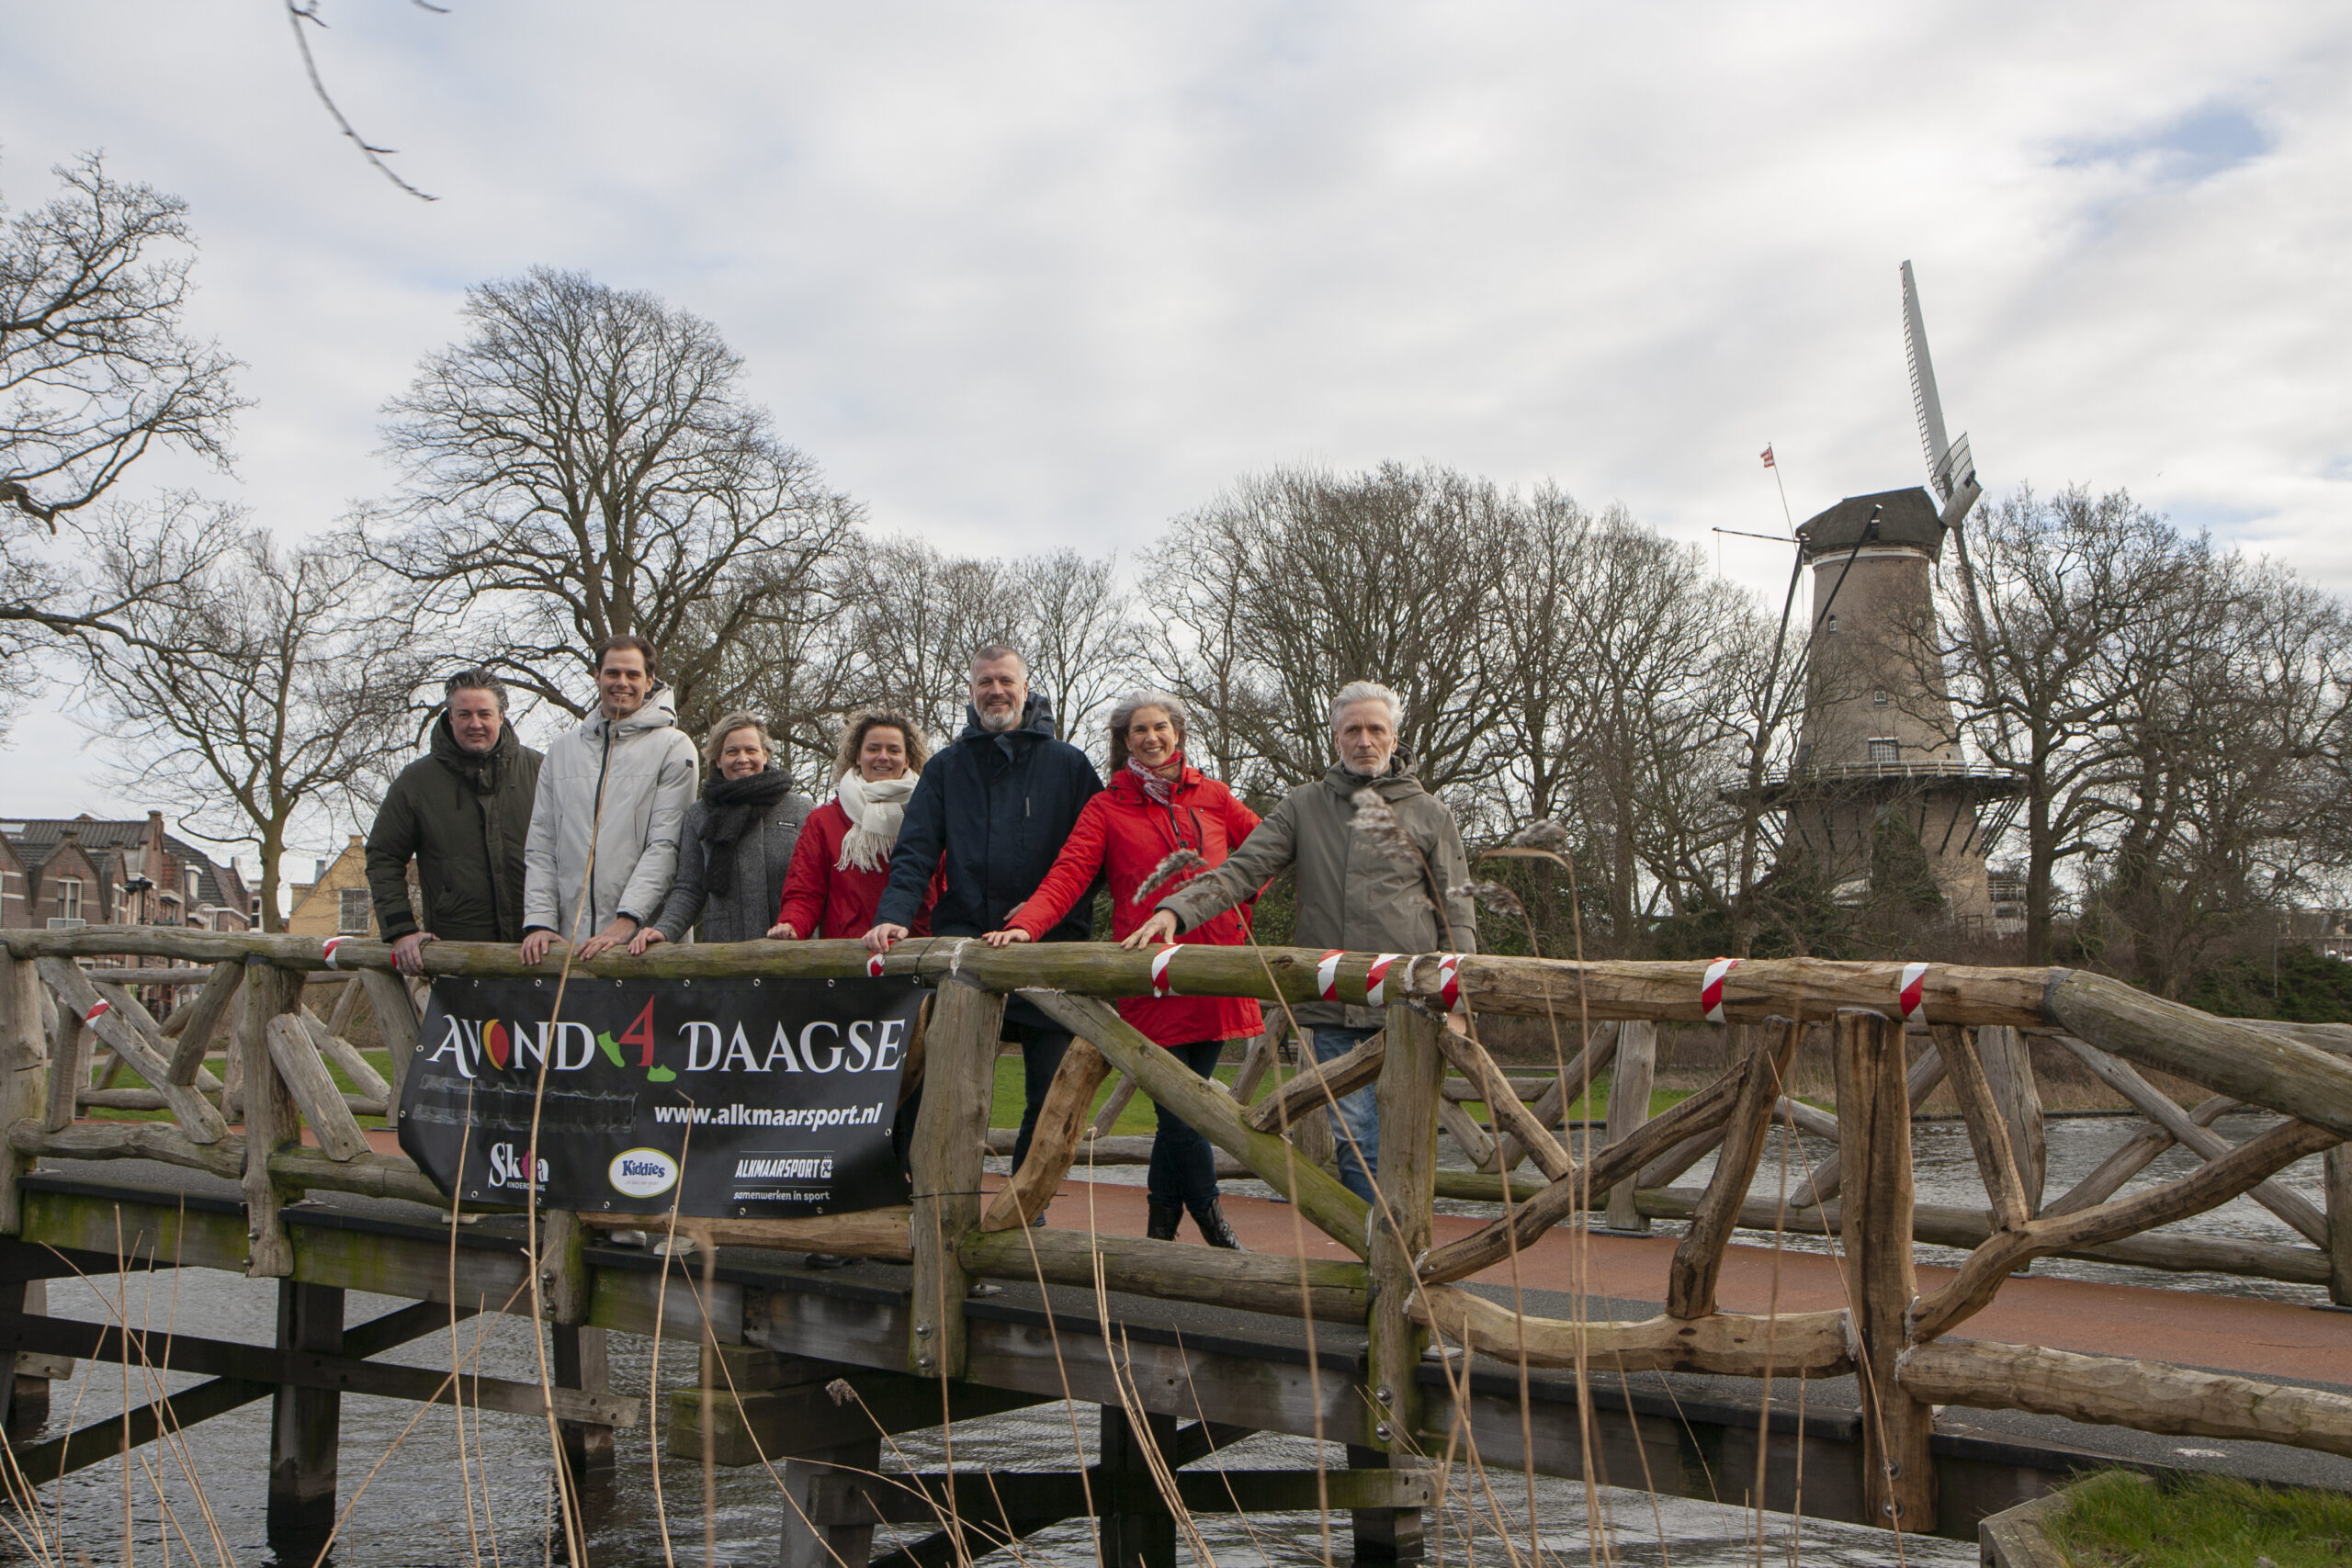 Foto van organisatoren Avond4daagse Alkmaar 7 mensen op een bruggetje